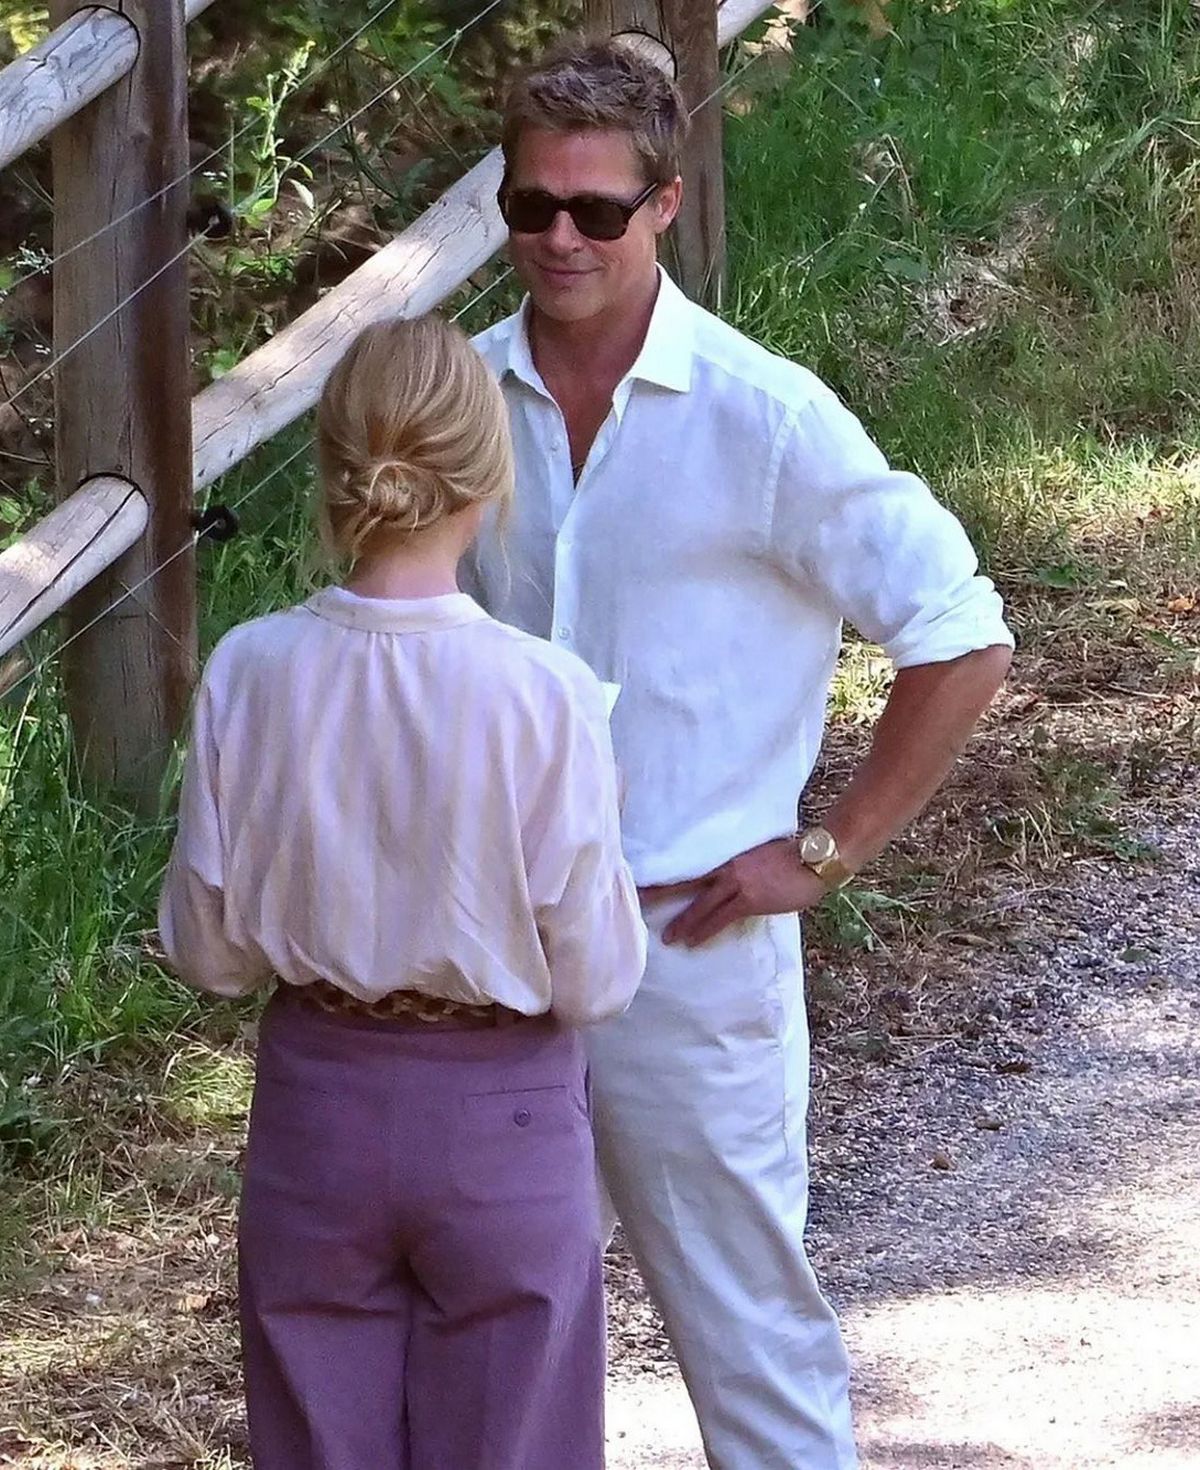 Au cours du week-end, Brad Pitt a laissé ses fans stupéfaits par son apparence remarquablement jeune lors du tournage d'une nouvelle publicité dans un vignoble situé dans le sud de la France.